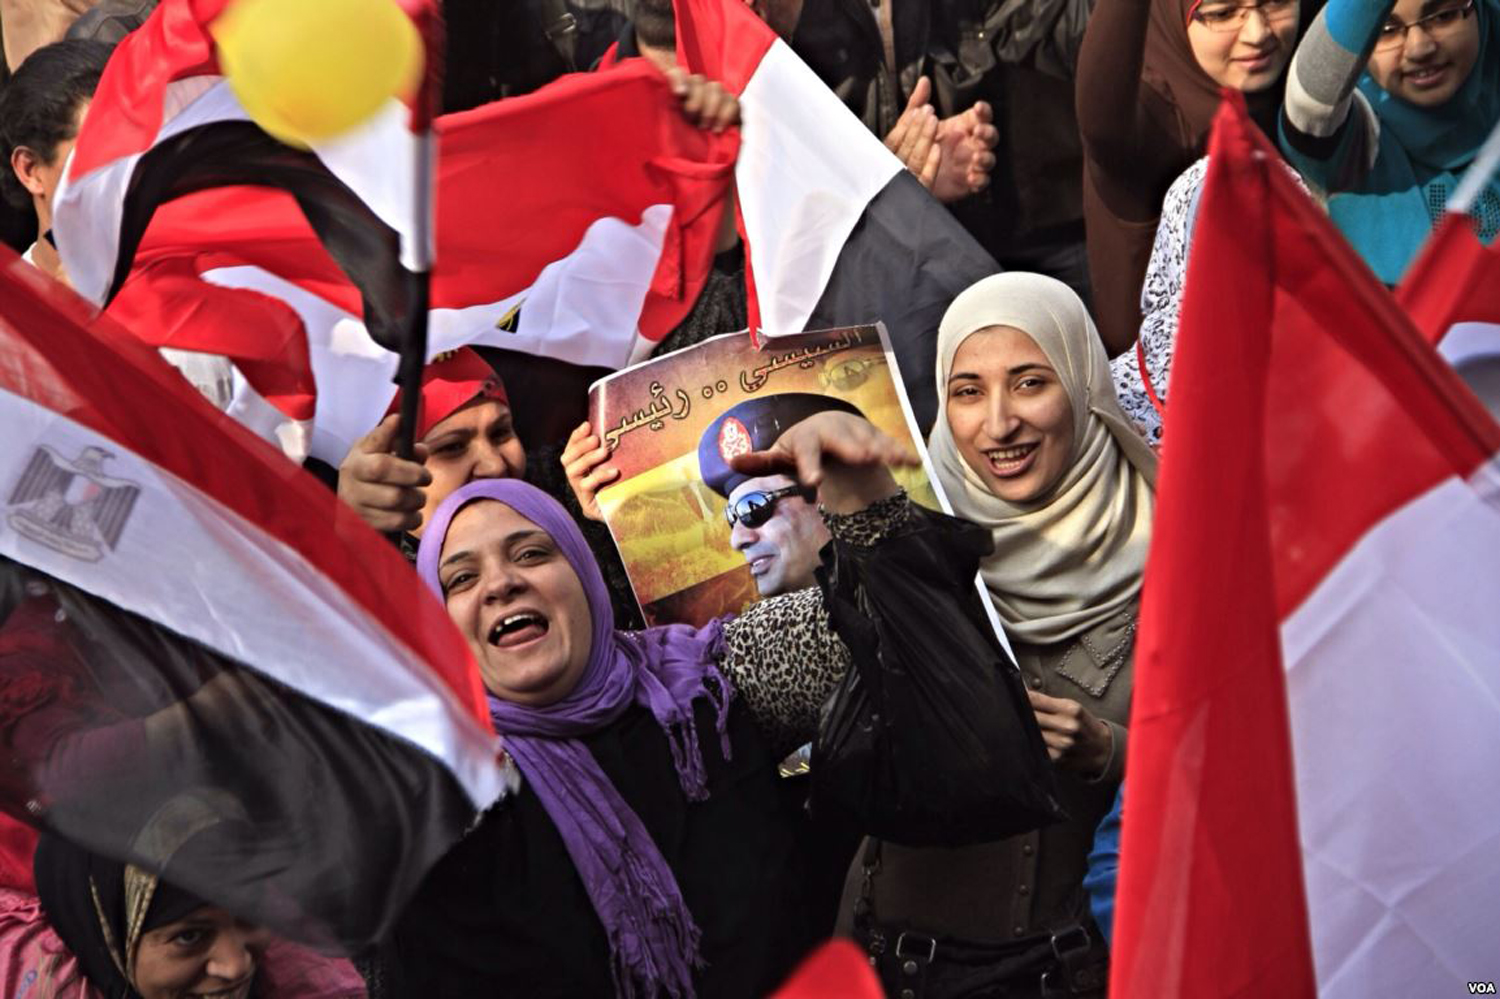 Una primavera al femminile? Donne alla conquista di uno spazio nelle rivolte arabe